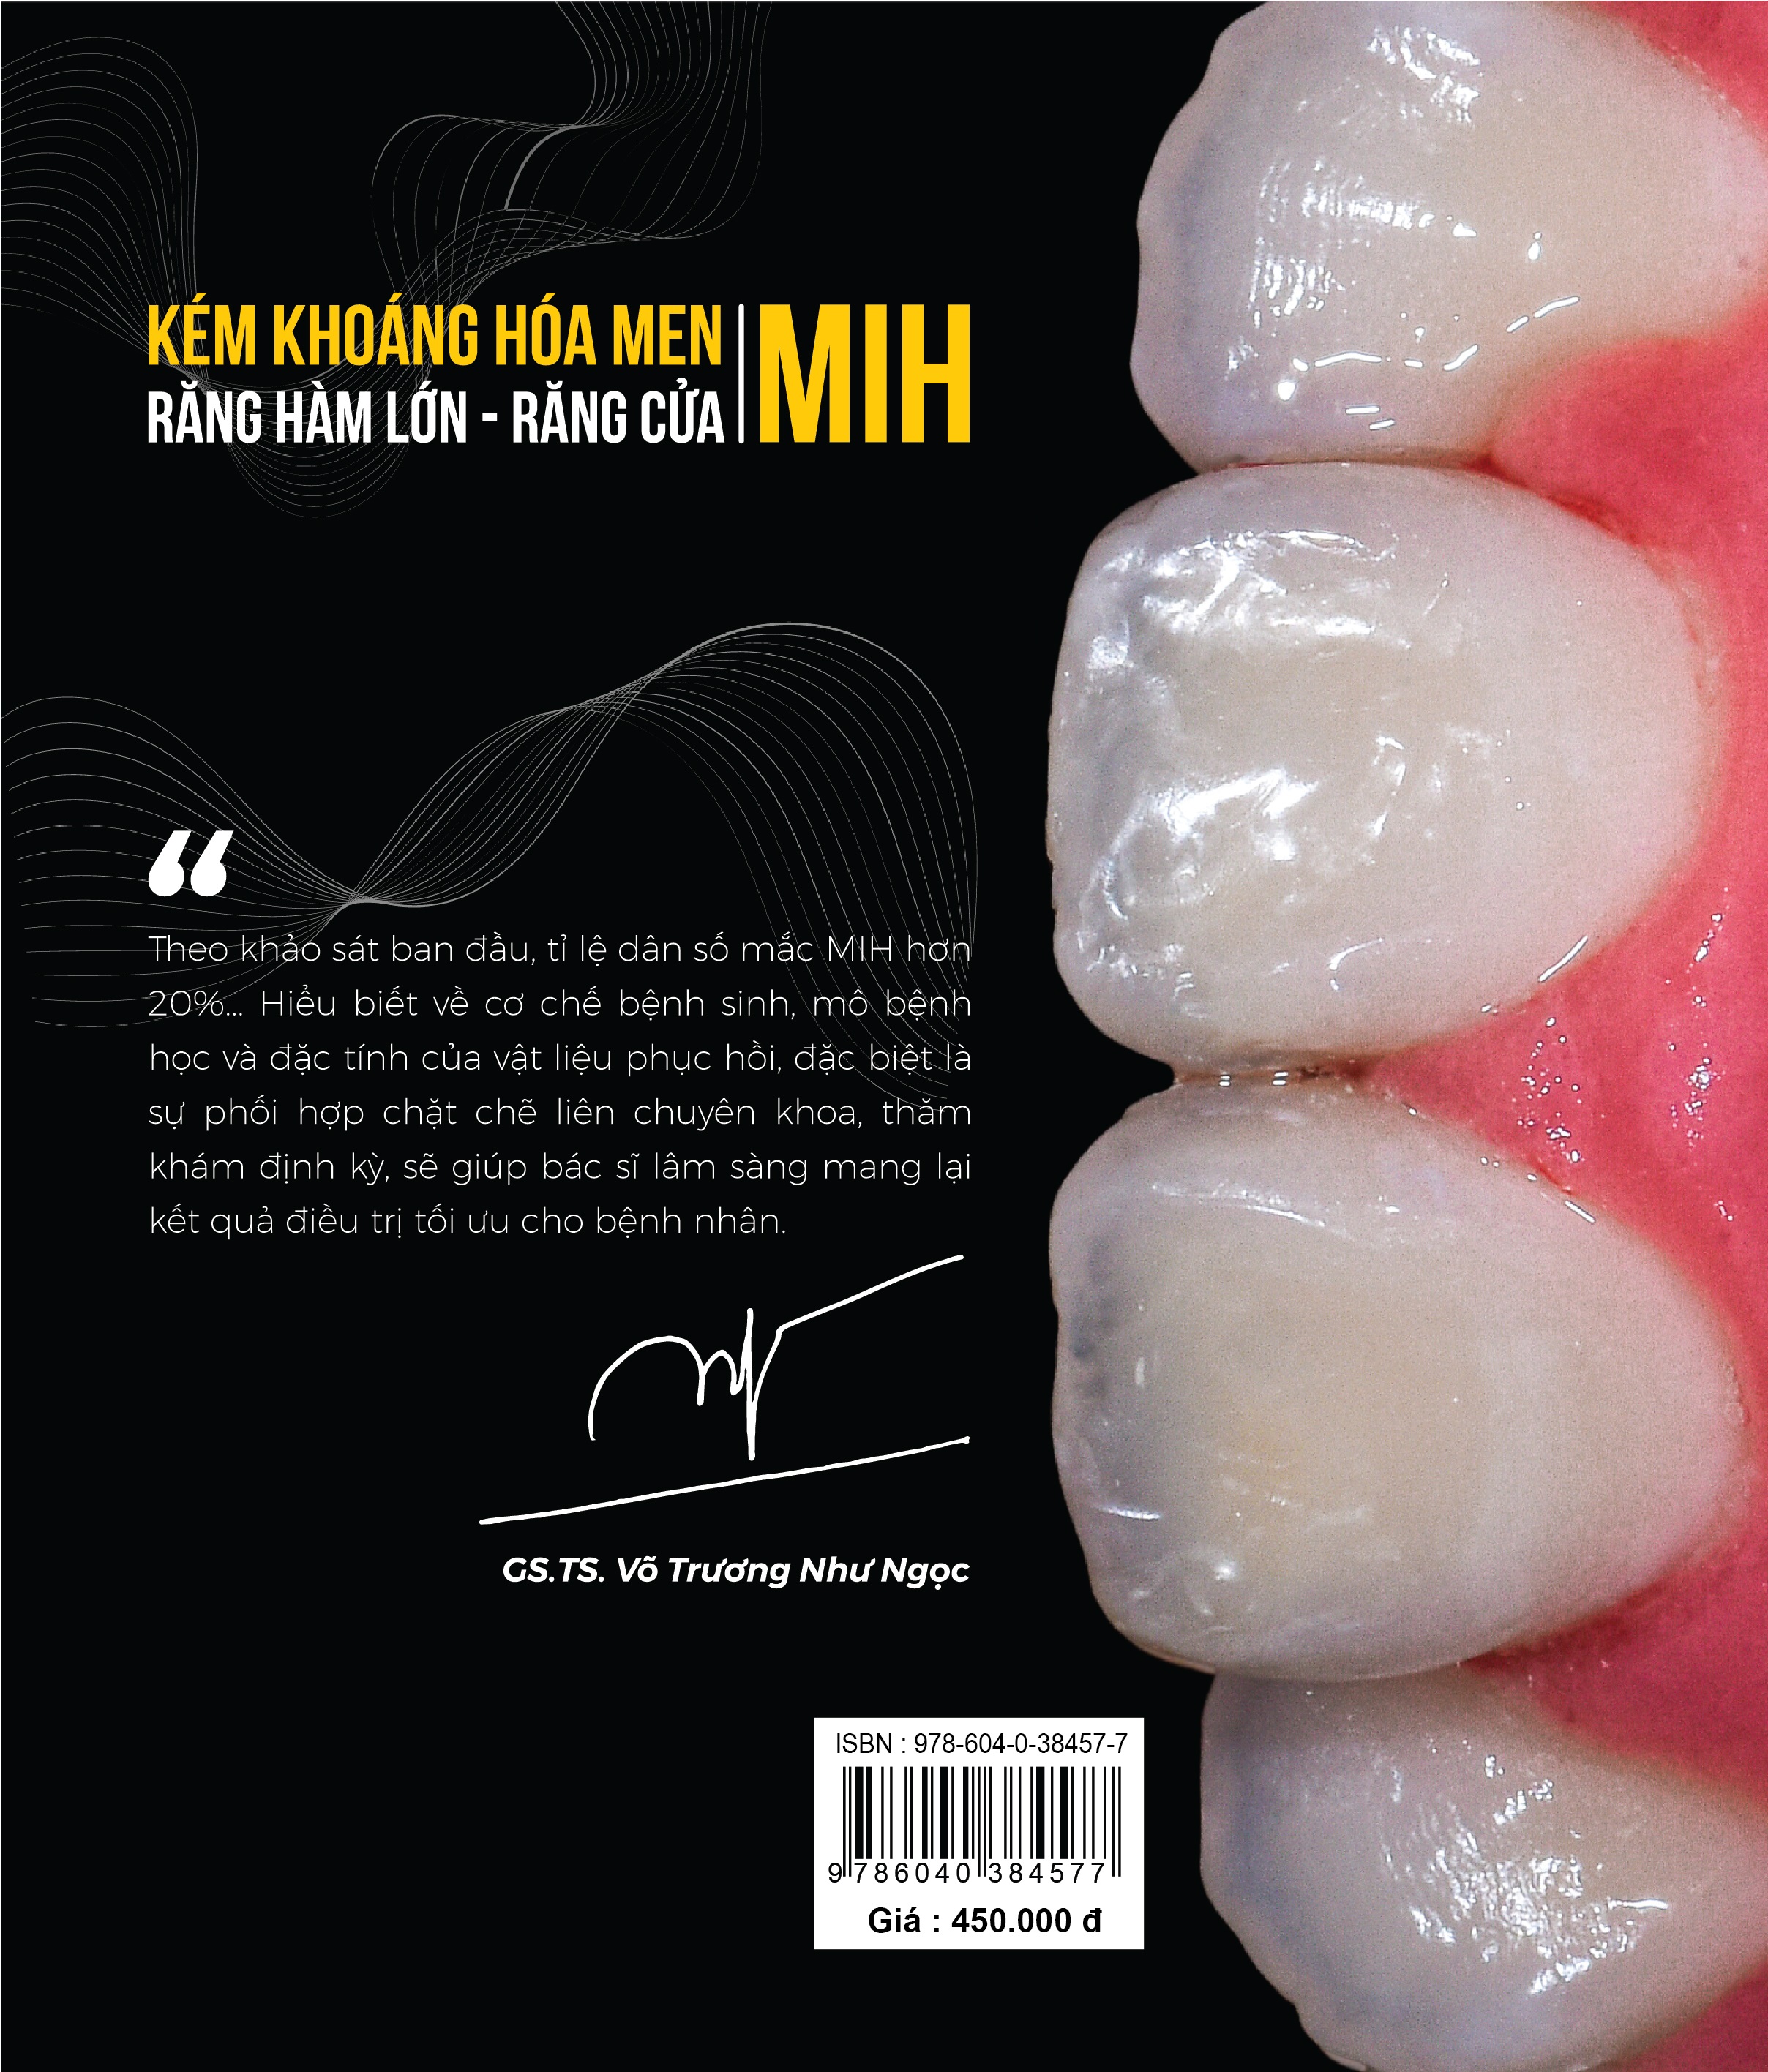 Kém khoáng hóa men răng hàm lớn – răng cửa (MIH) : Nghệ thuật chẩn đoán, ĐT  và kiểm soát